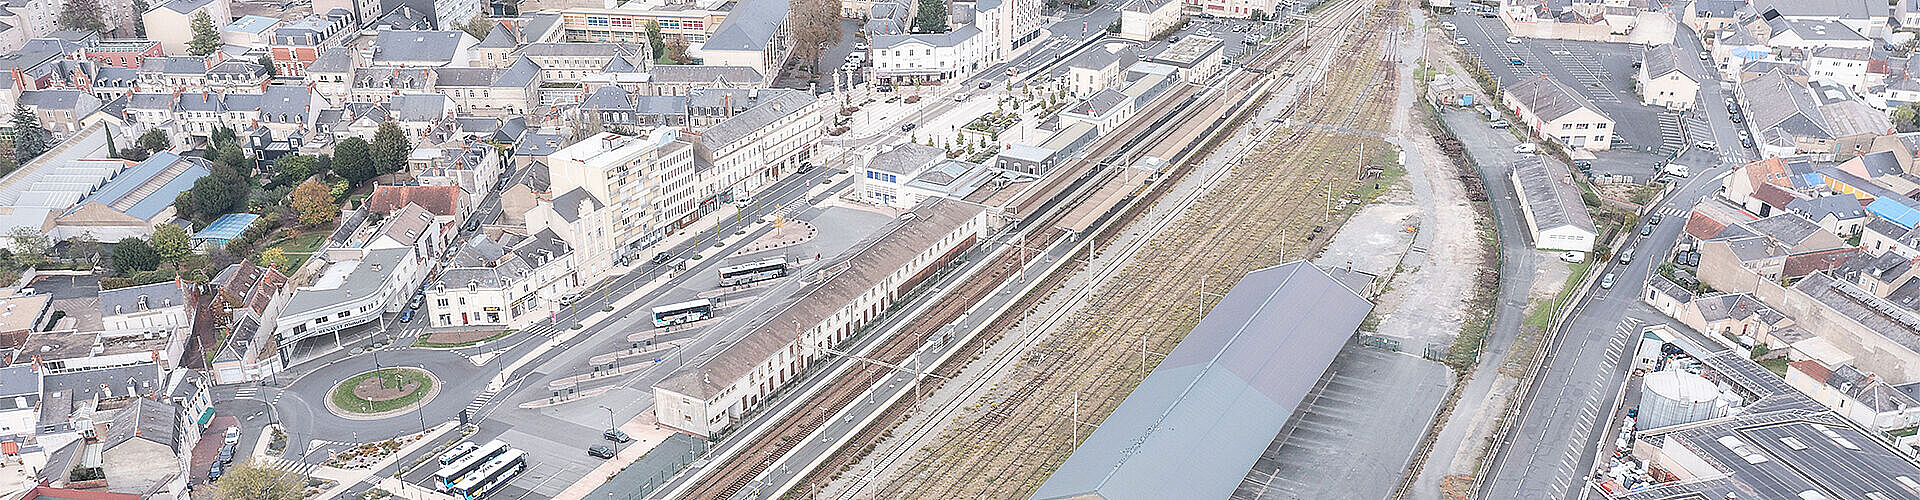 Pôle gare Châteauroux